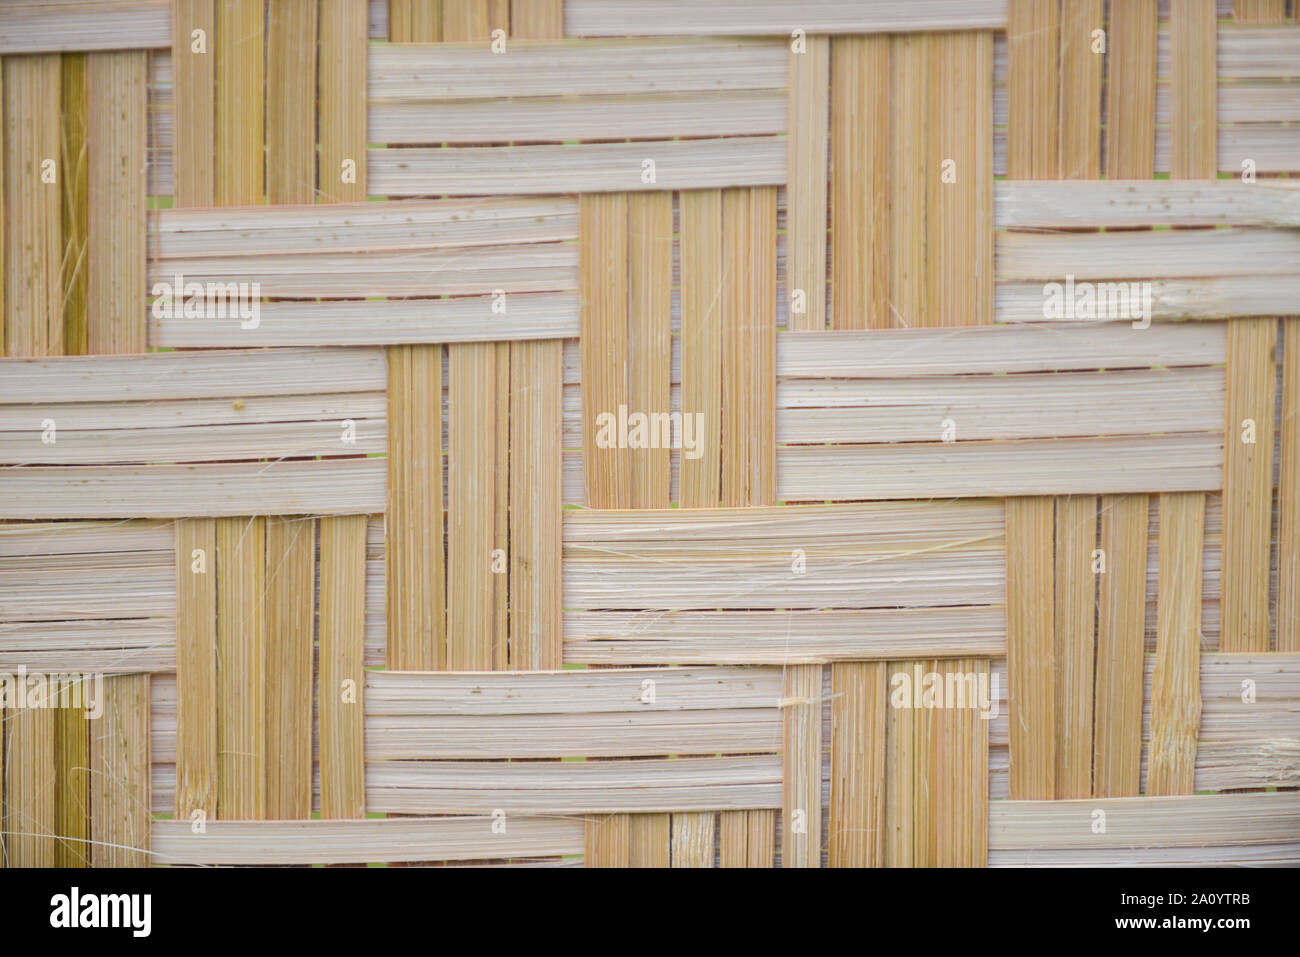 A Borneo Dayak Long-House Bamboo Floor Mat, 2317